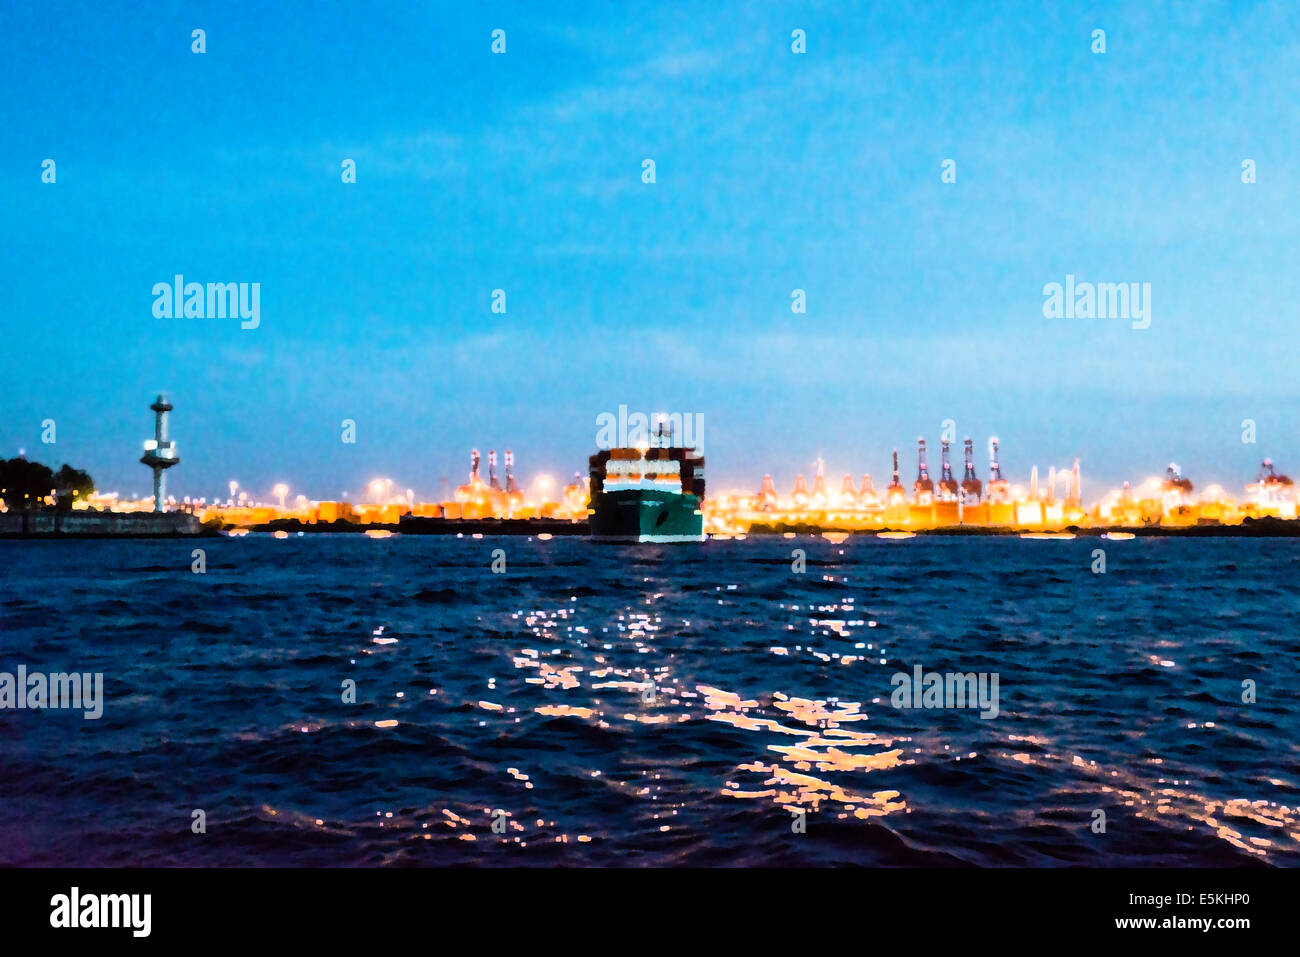 Zusammenfassung: Malerei eines Containerschiffes verlassen den Hafen bei Nacht - Foto mit Malerei Wirkung verarbeitet Stockfoto